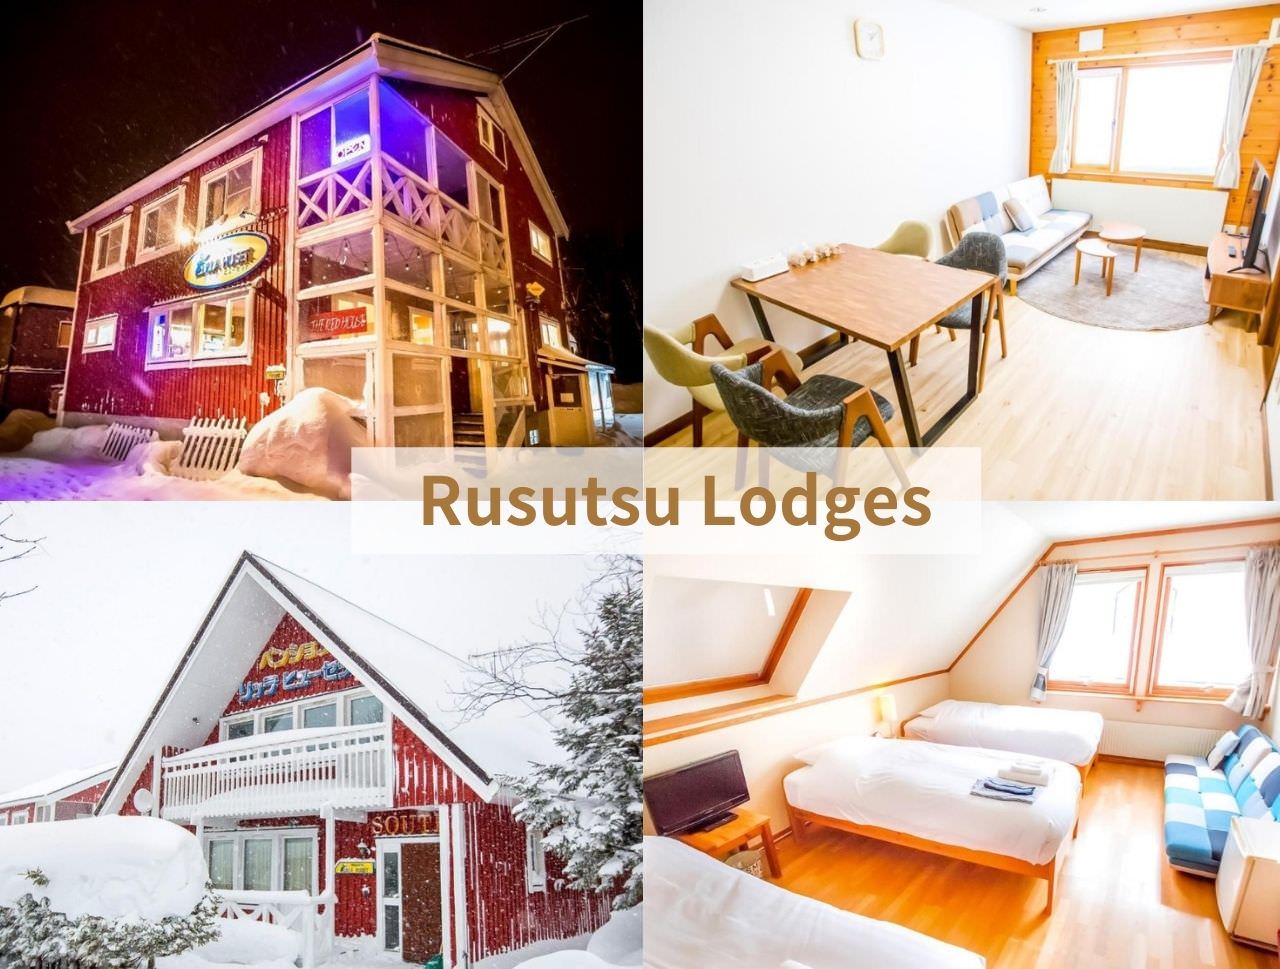 Rusutsu Lodges